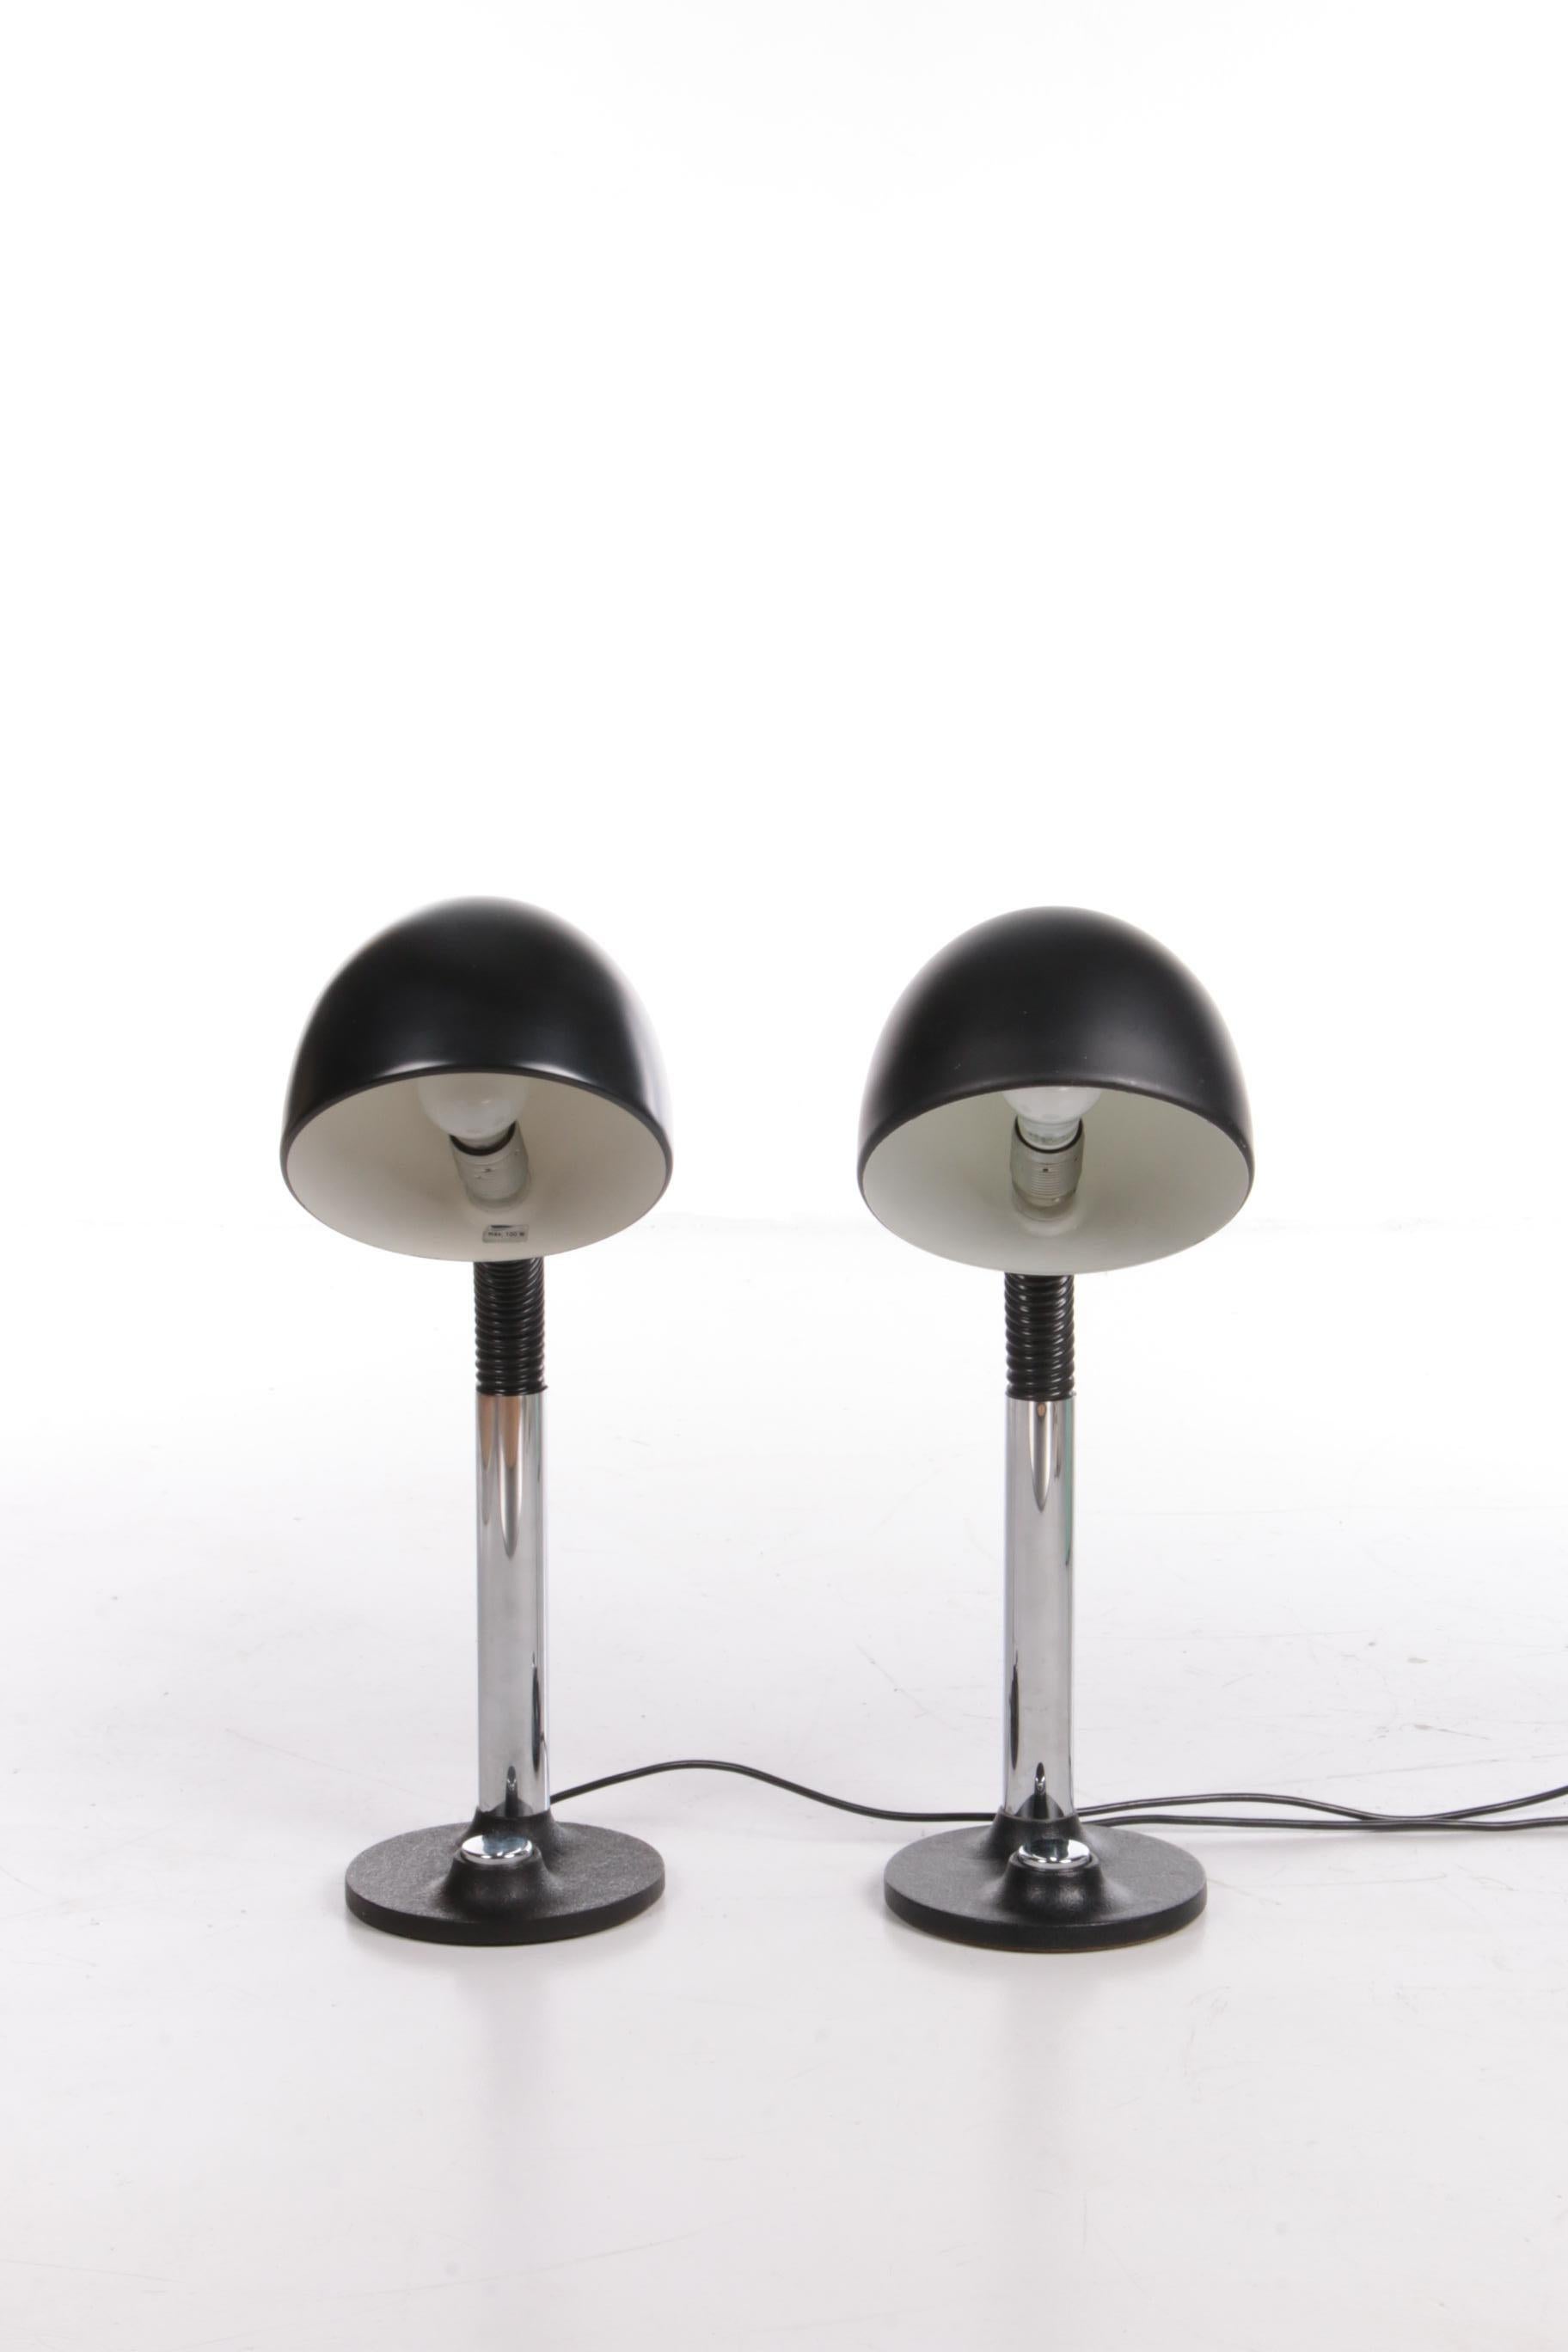 Ein Satz von zwei großen Schreibtischlampen (Modell 7404), hergestellt in den 1970er Jahren von Hillebrand, Deutschland. Beide Lampen sind in sehr gutem Vintage-Zustand.

Dieses Modell hat einen schwarzen, runden Sockel aus Gusseisen mit einem